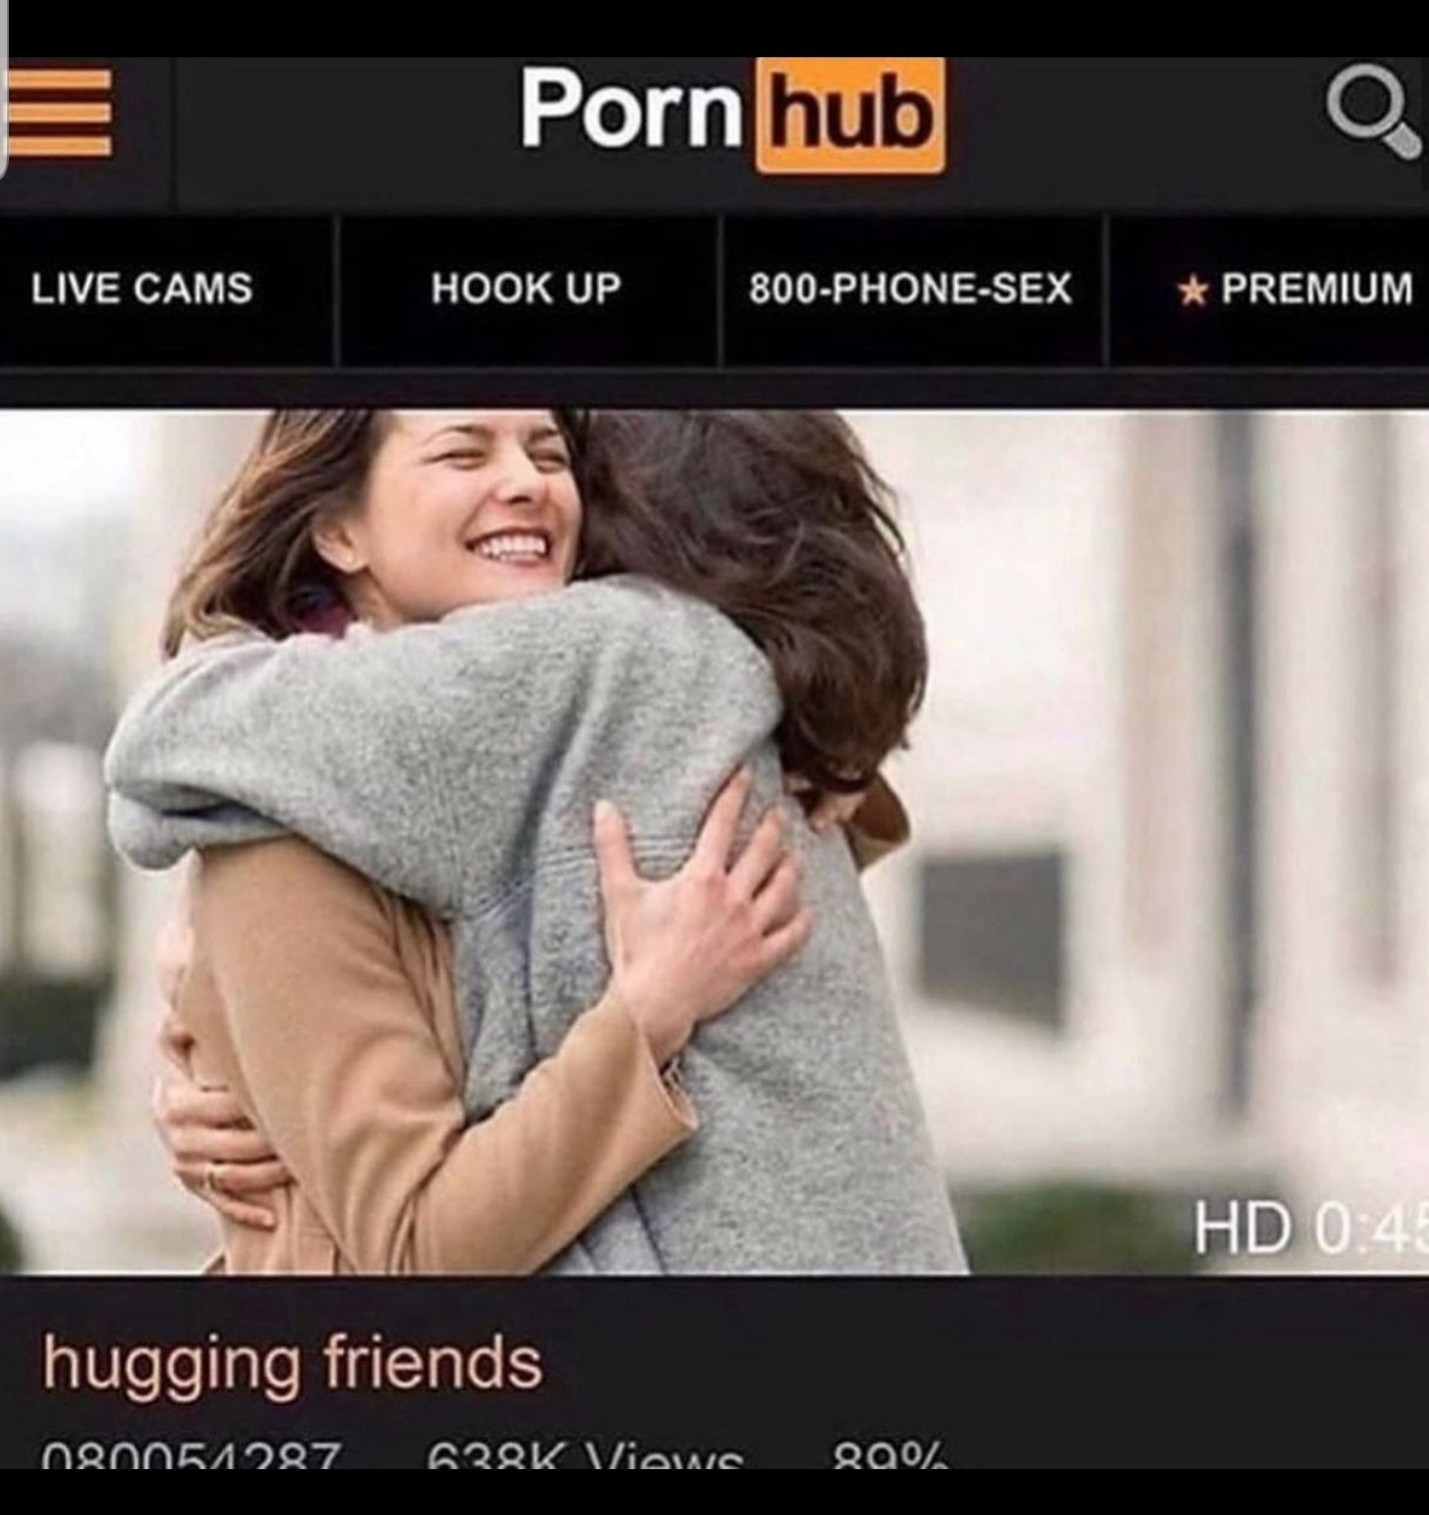 Porn hug - meme